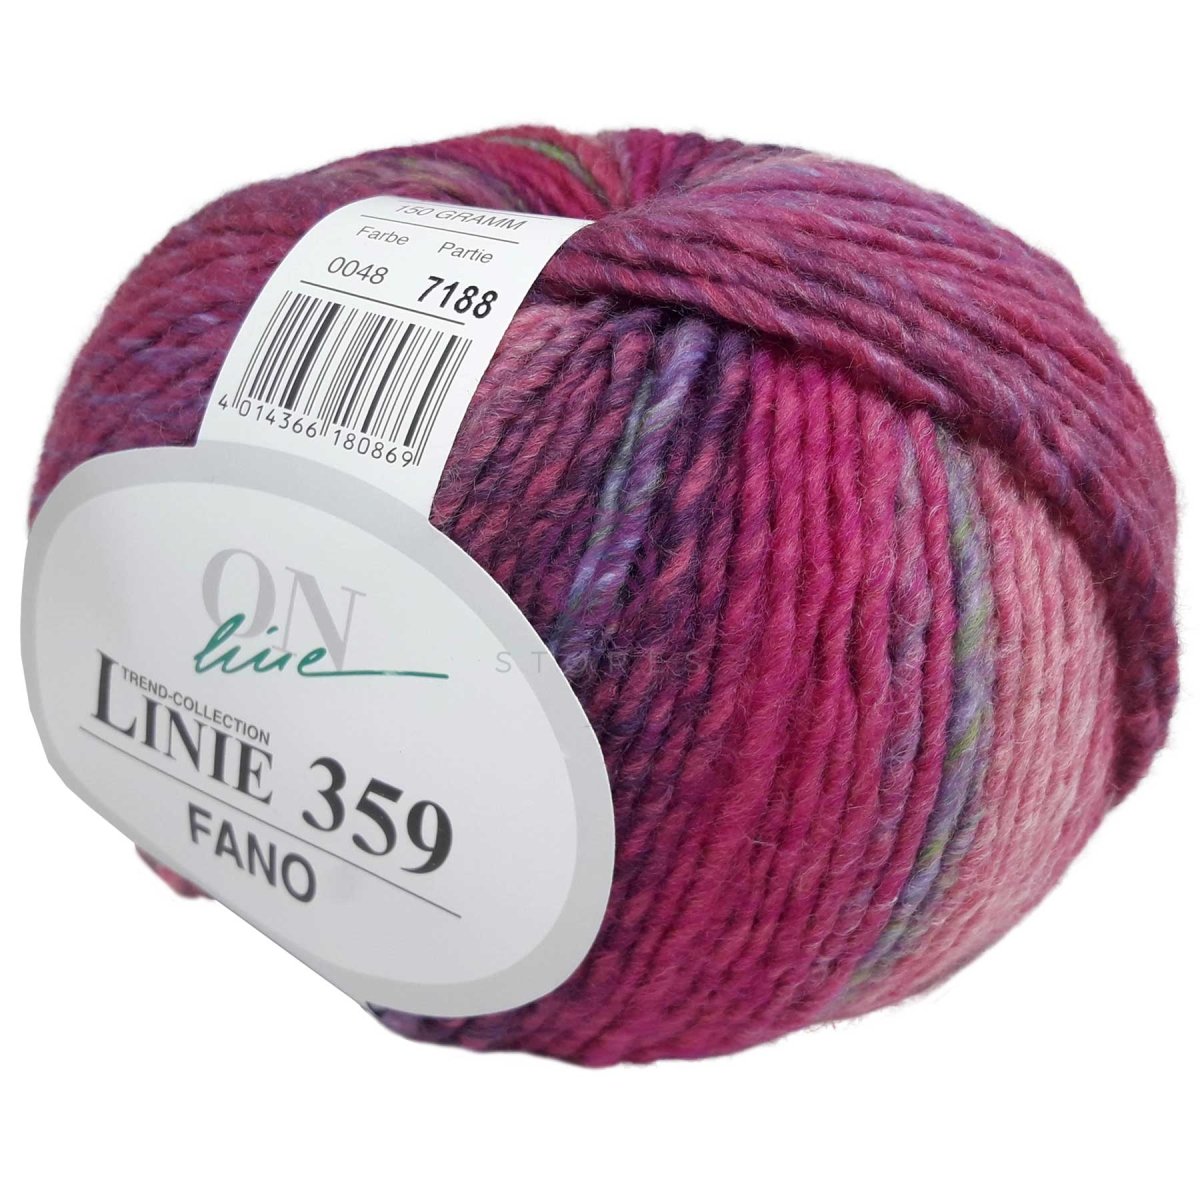 FANO - Crochetstores110359-0484014366180869